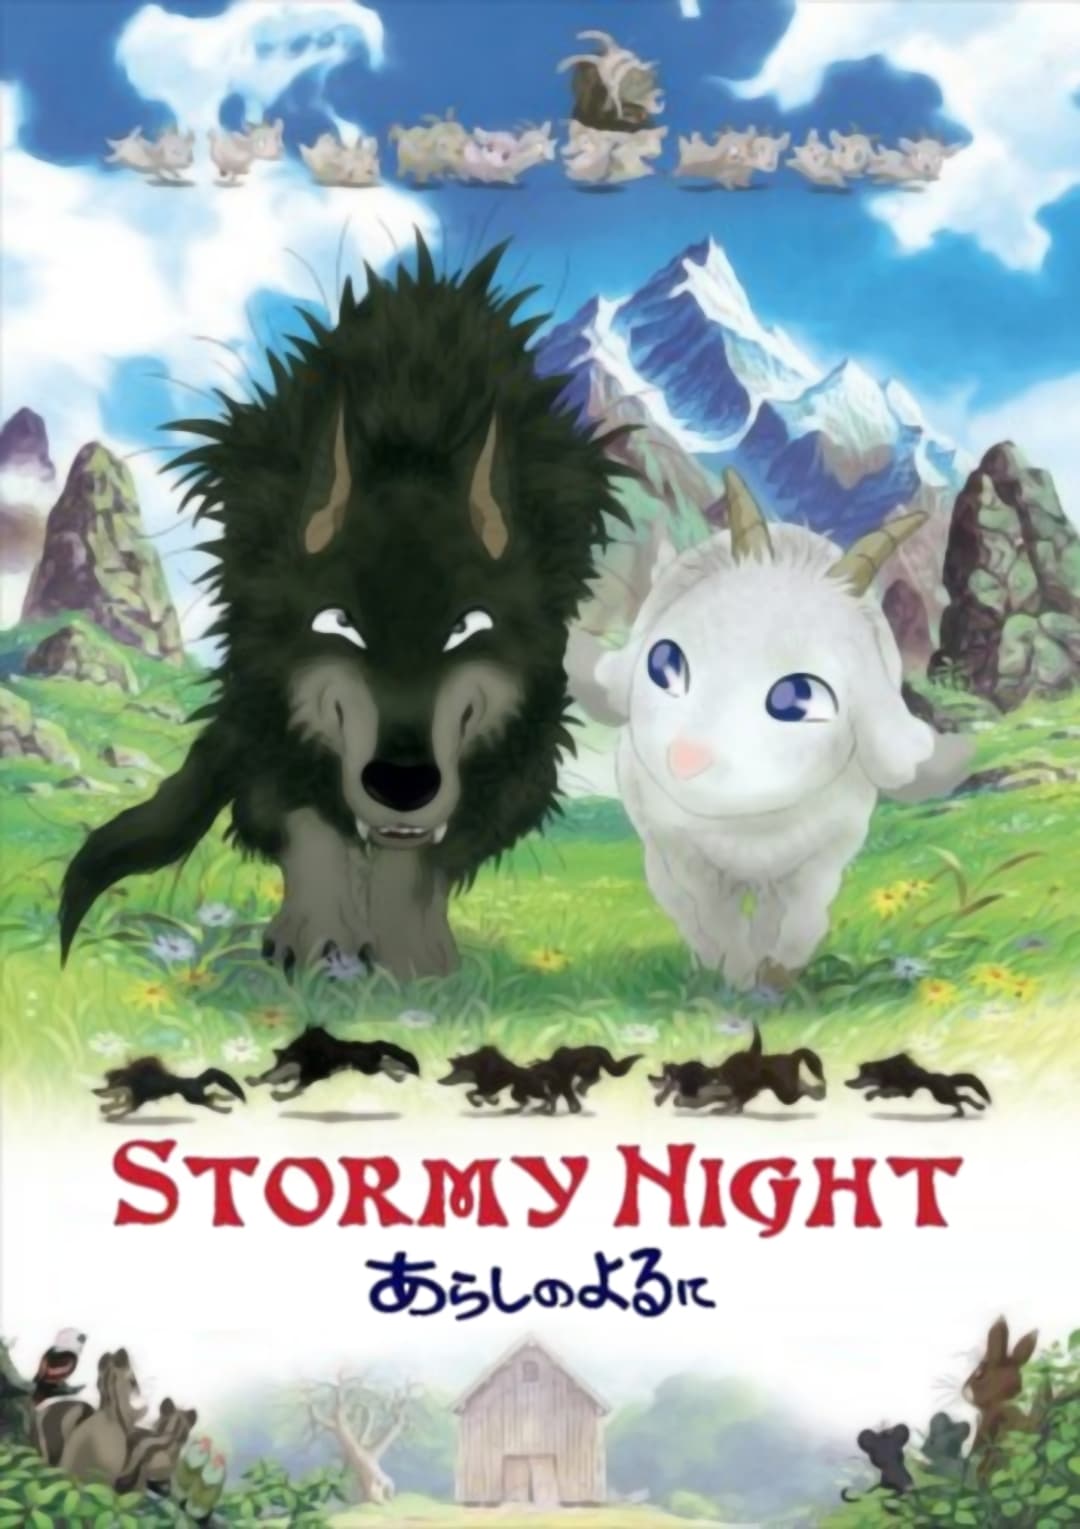 One Stormy Night (2005)